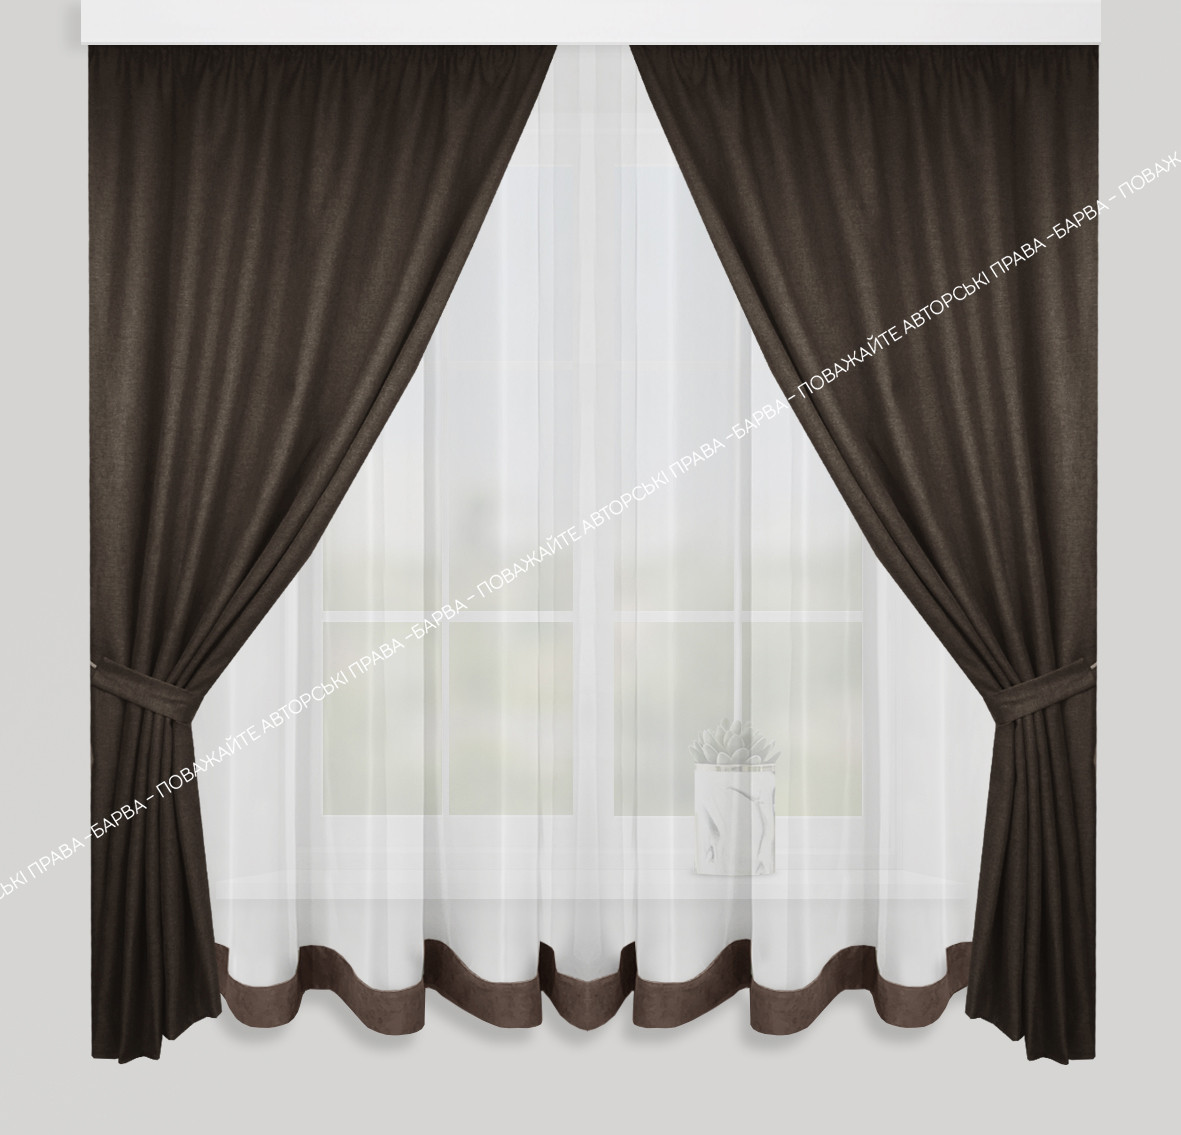 Штори та тюль в коричневому кольорі для кухонного вікна 2,9х1,6м - тюль, 1,4х1,6м - штори, кухонні фіранки